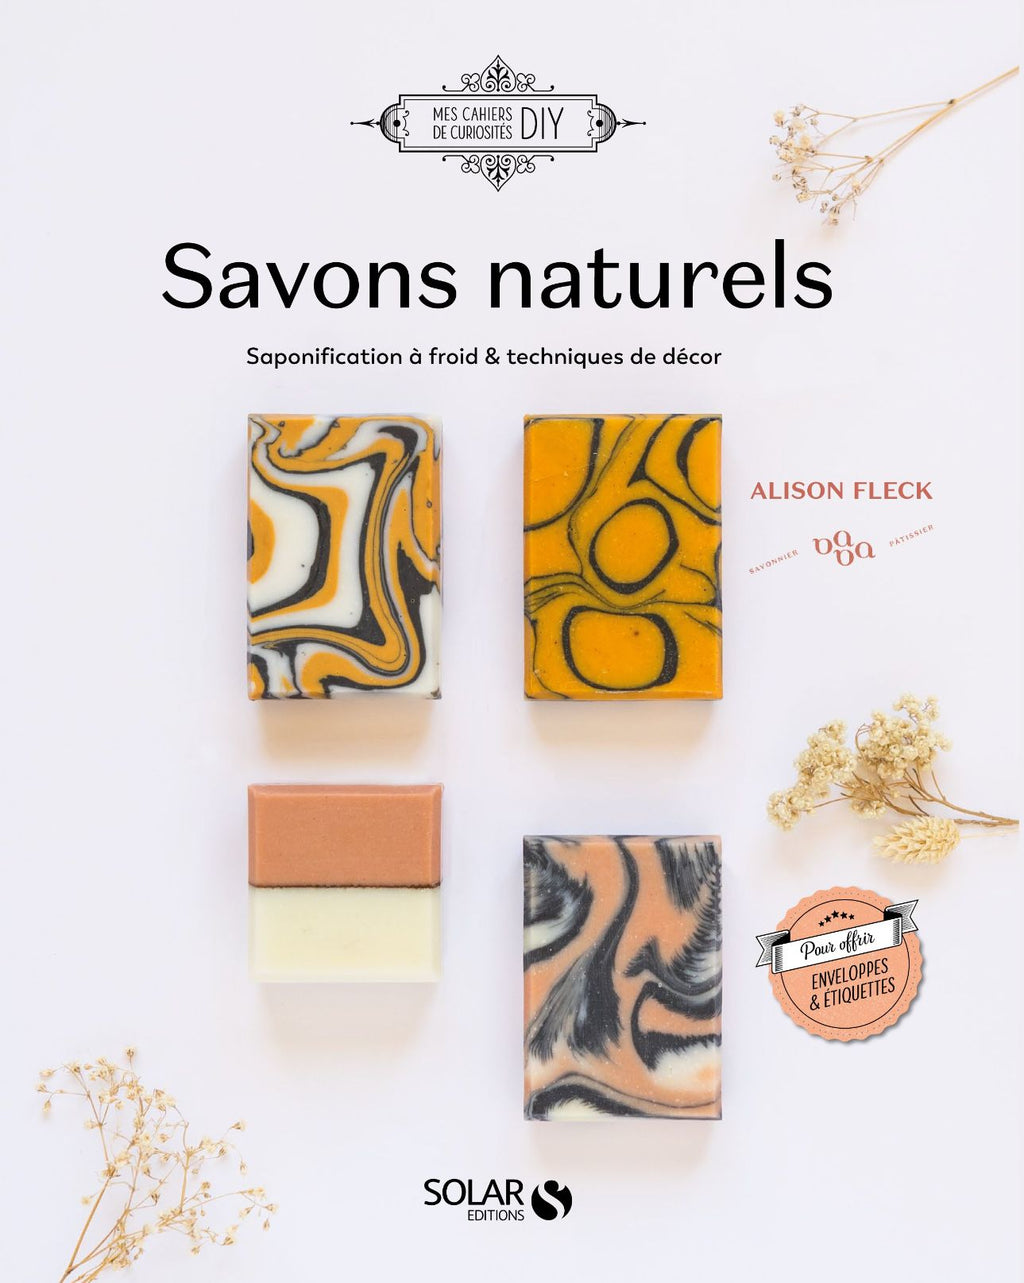 savon-artisanal-saponification-naturel-cosmetique-livre-carnet-recette-deco-DIY-tutoriel